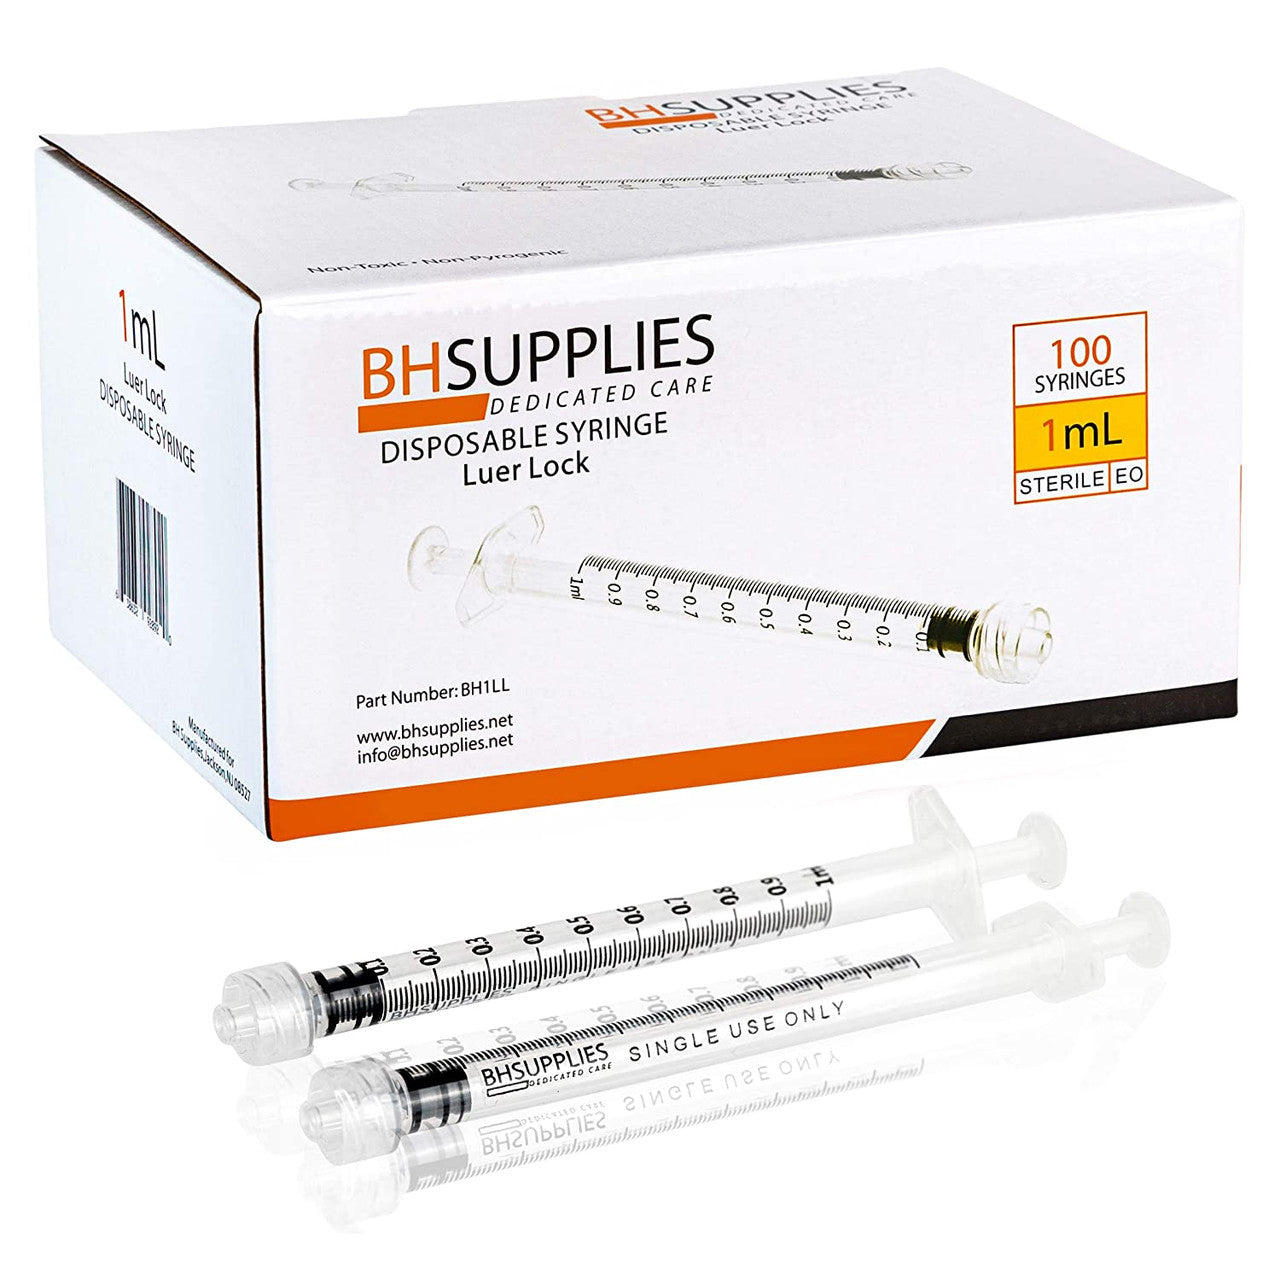 1ml Syringe Sterile with Luer Lock Tip- (No Needle) Individually Sealed - 100 Syringes